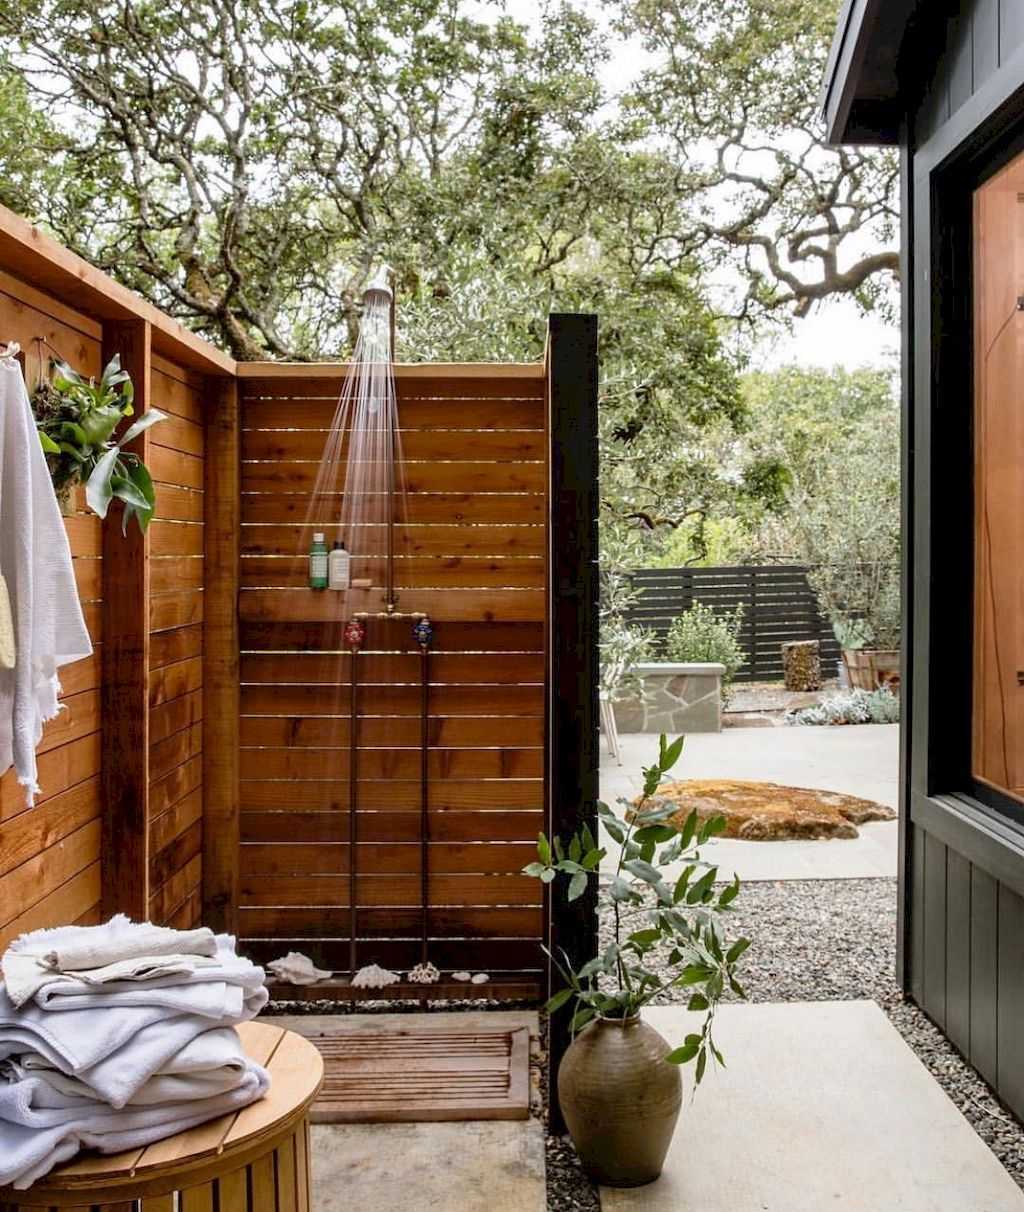 Как сделать летний душ на даче: пошаговая инструкция